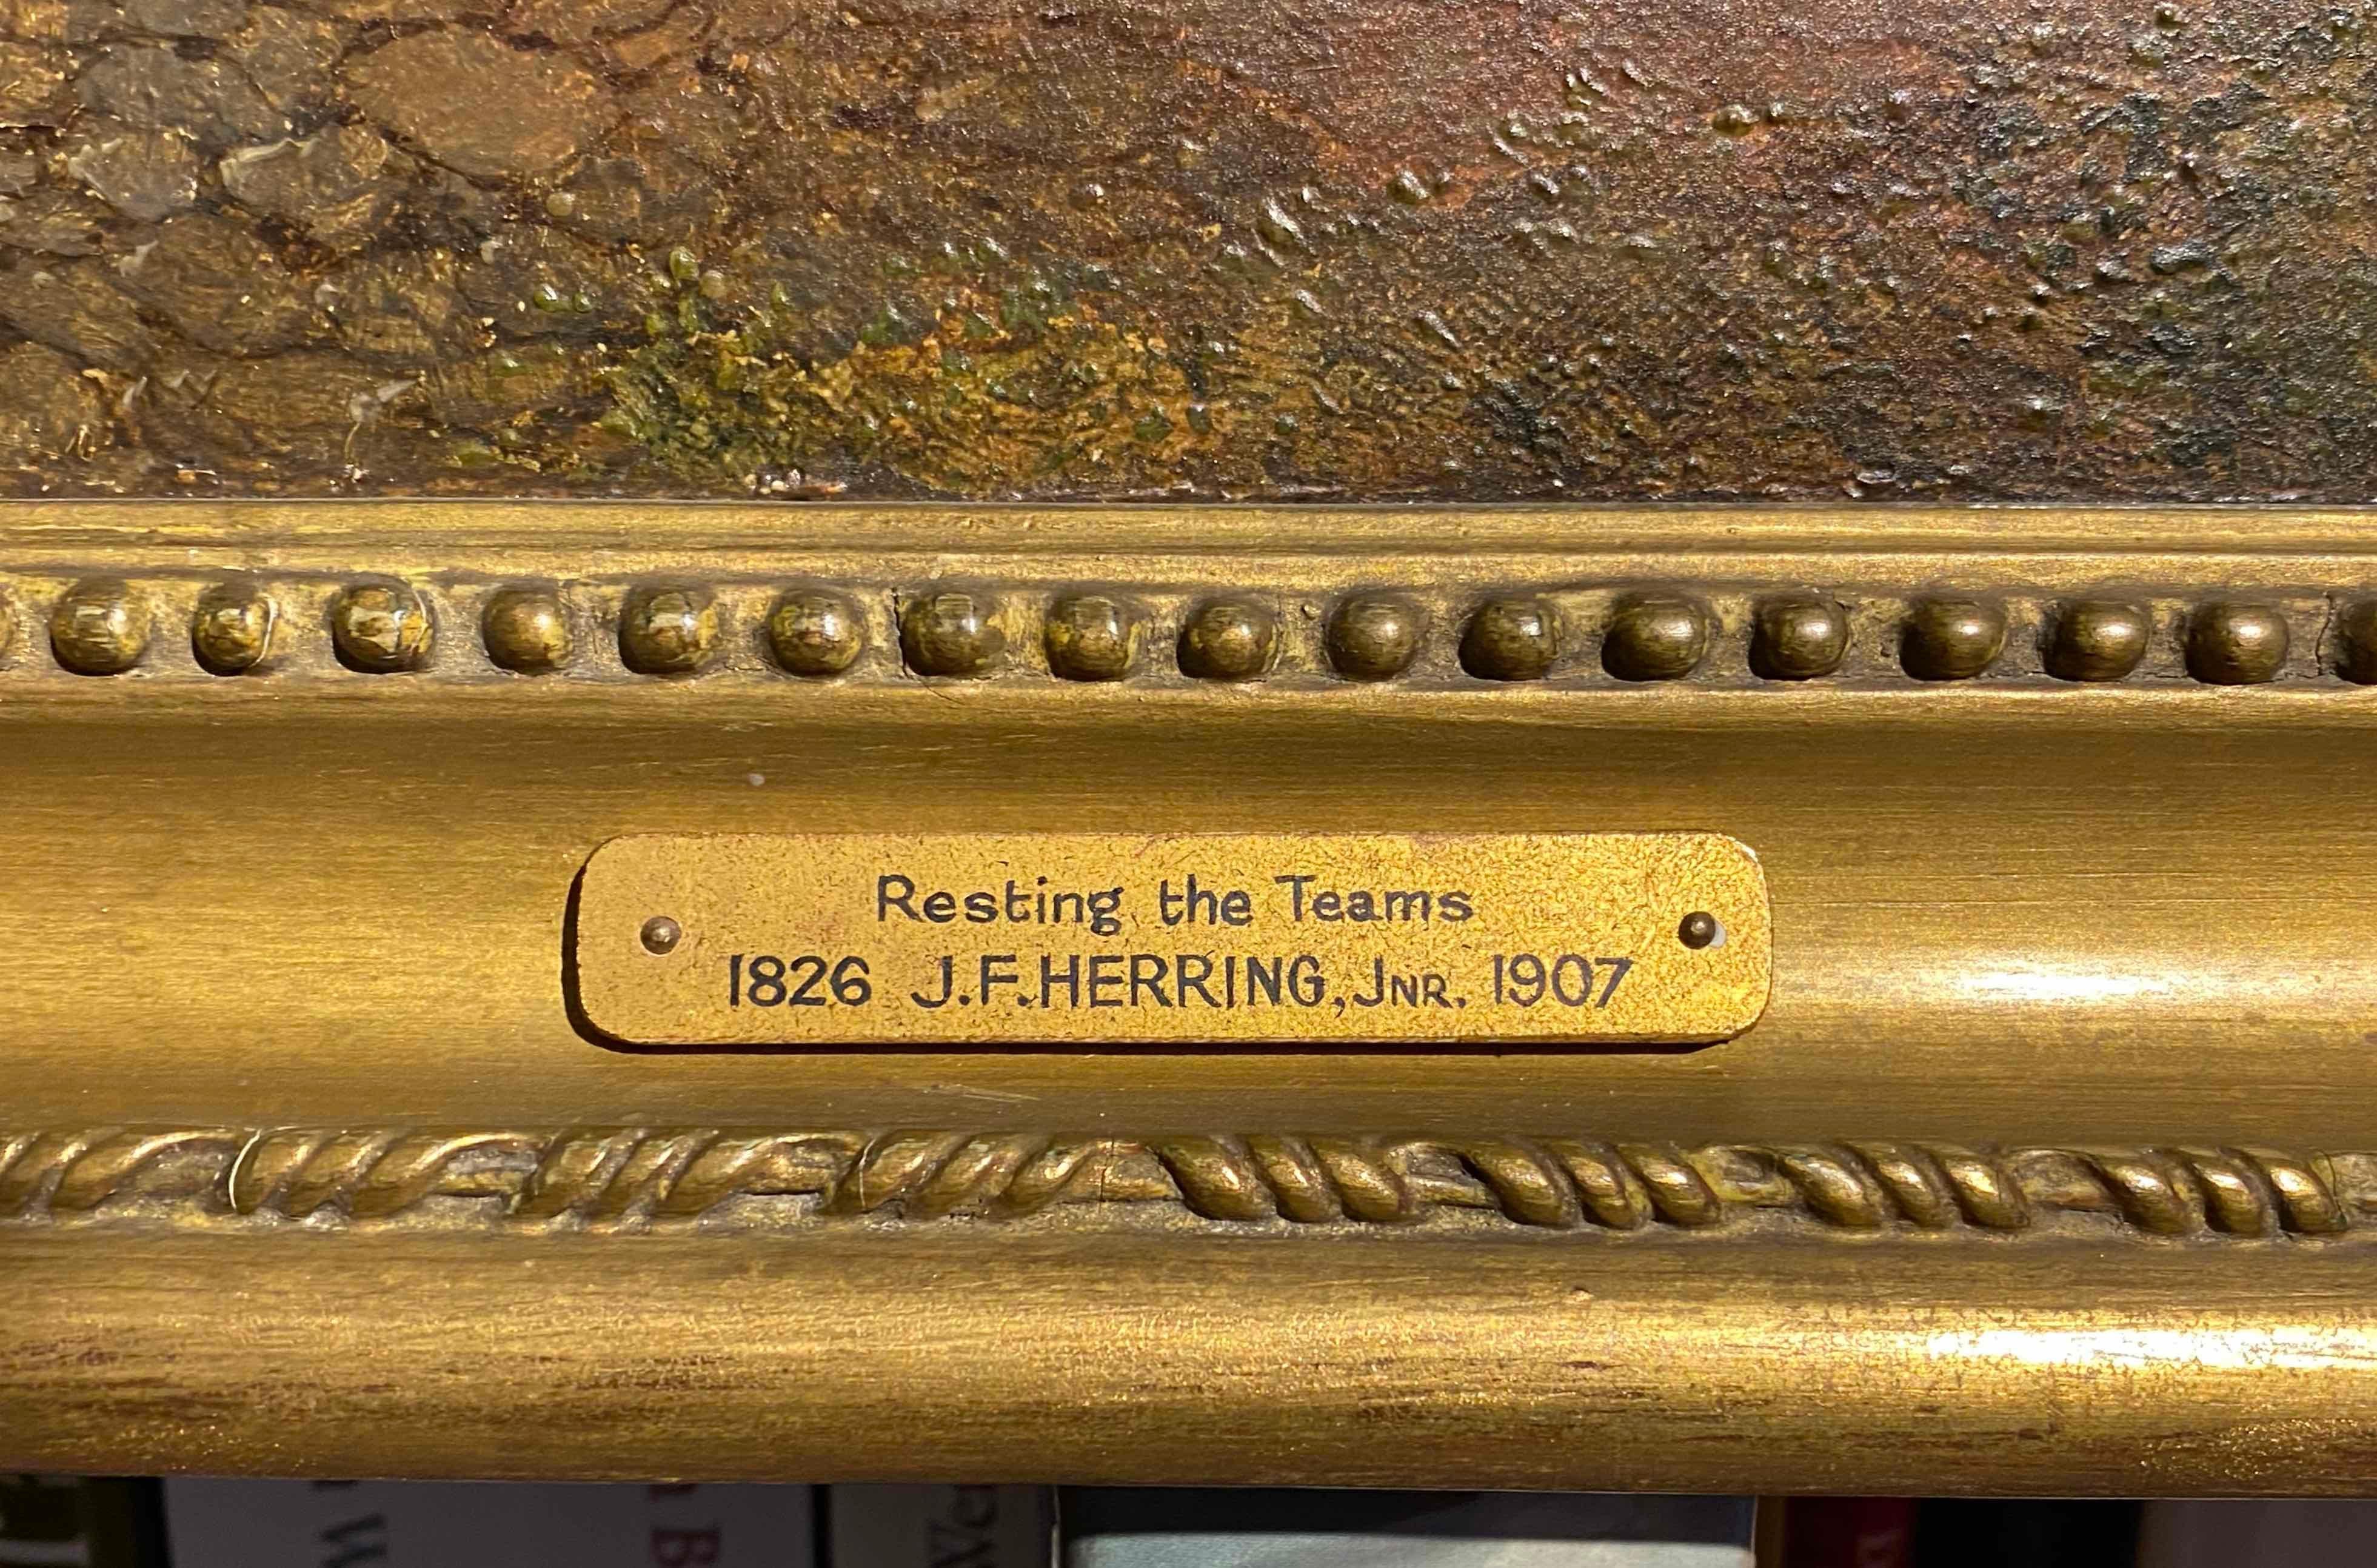 John Frederick Herring Jr (1816-1907) 
